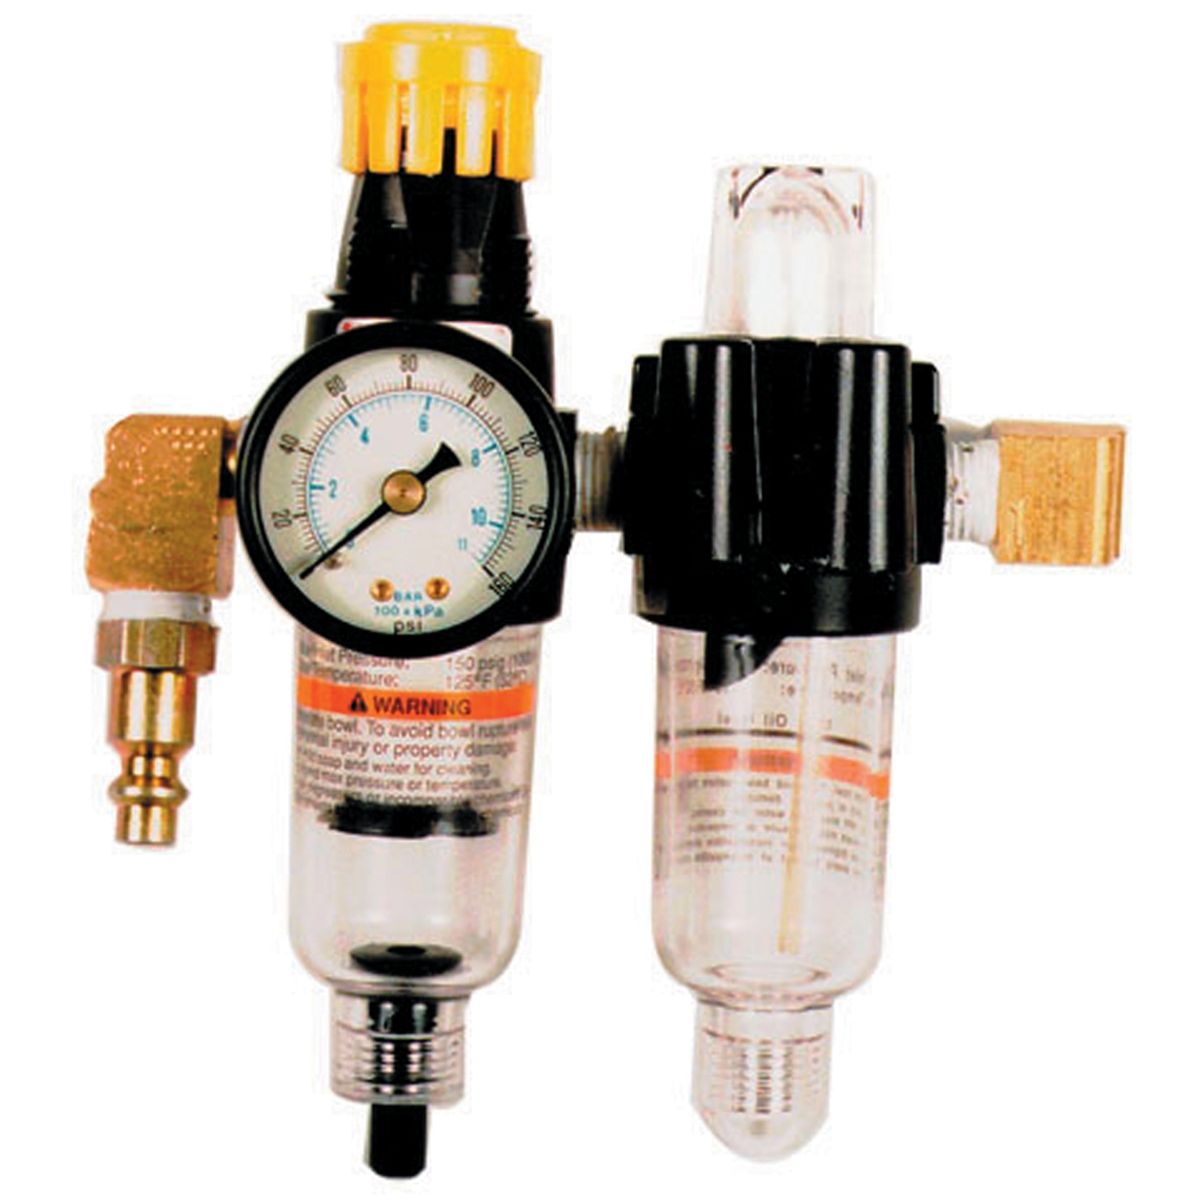 Filter Air pressure Regulator / Lubricator